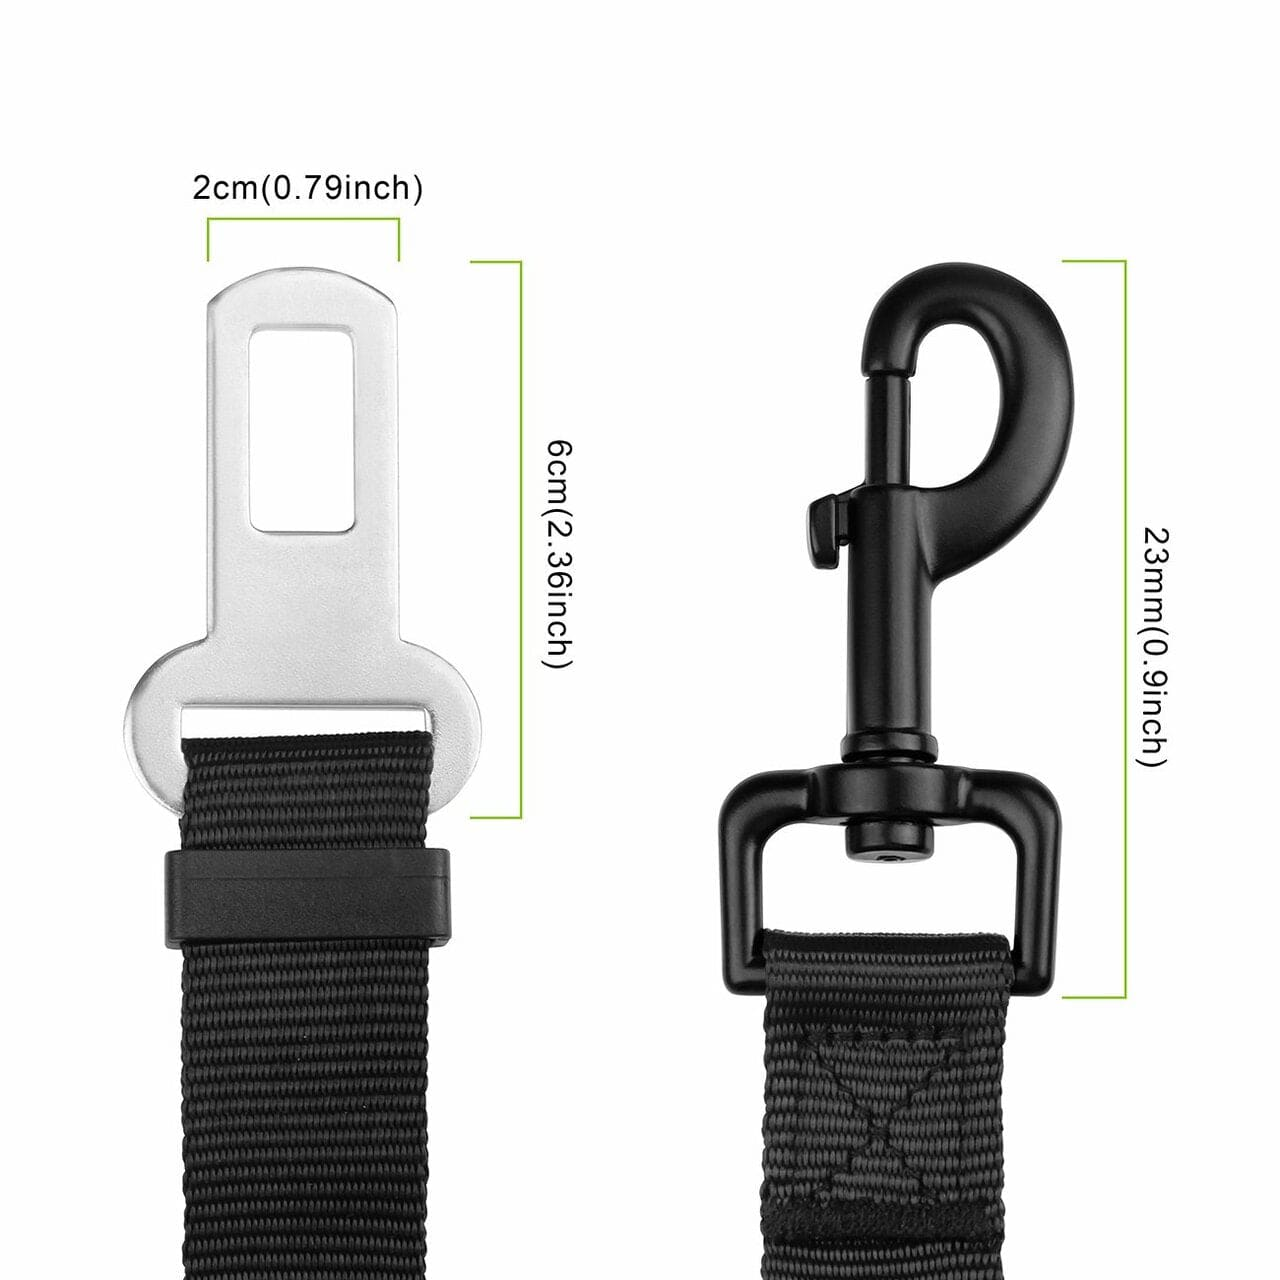 2 Pack Adjustable Dog Harness For Car Seatbelt Connector Restrain Tether For Pet